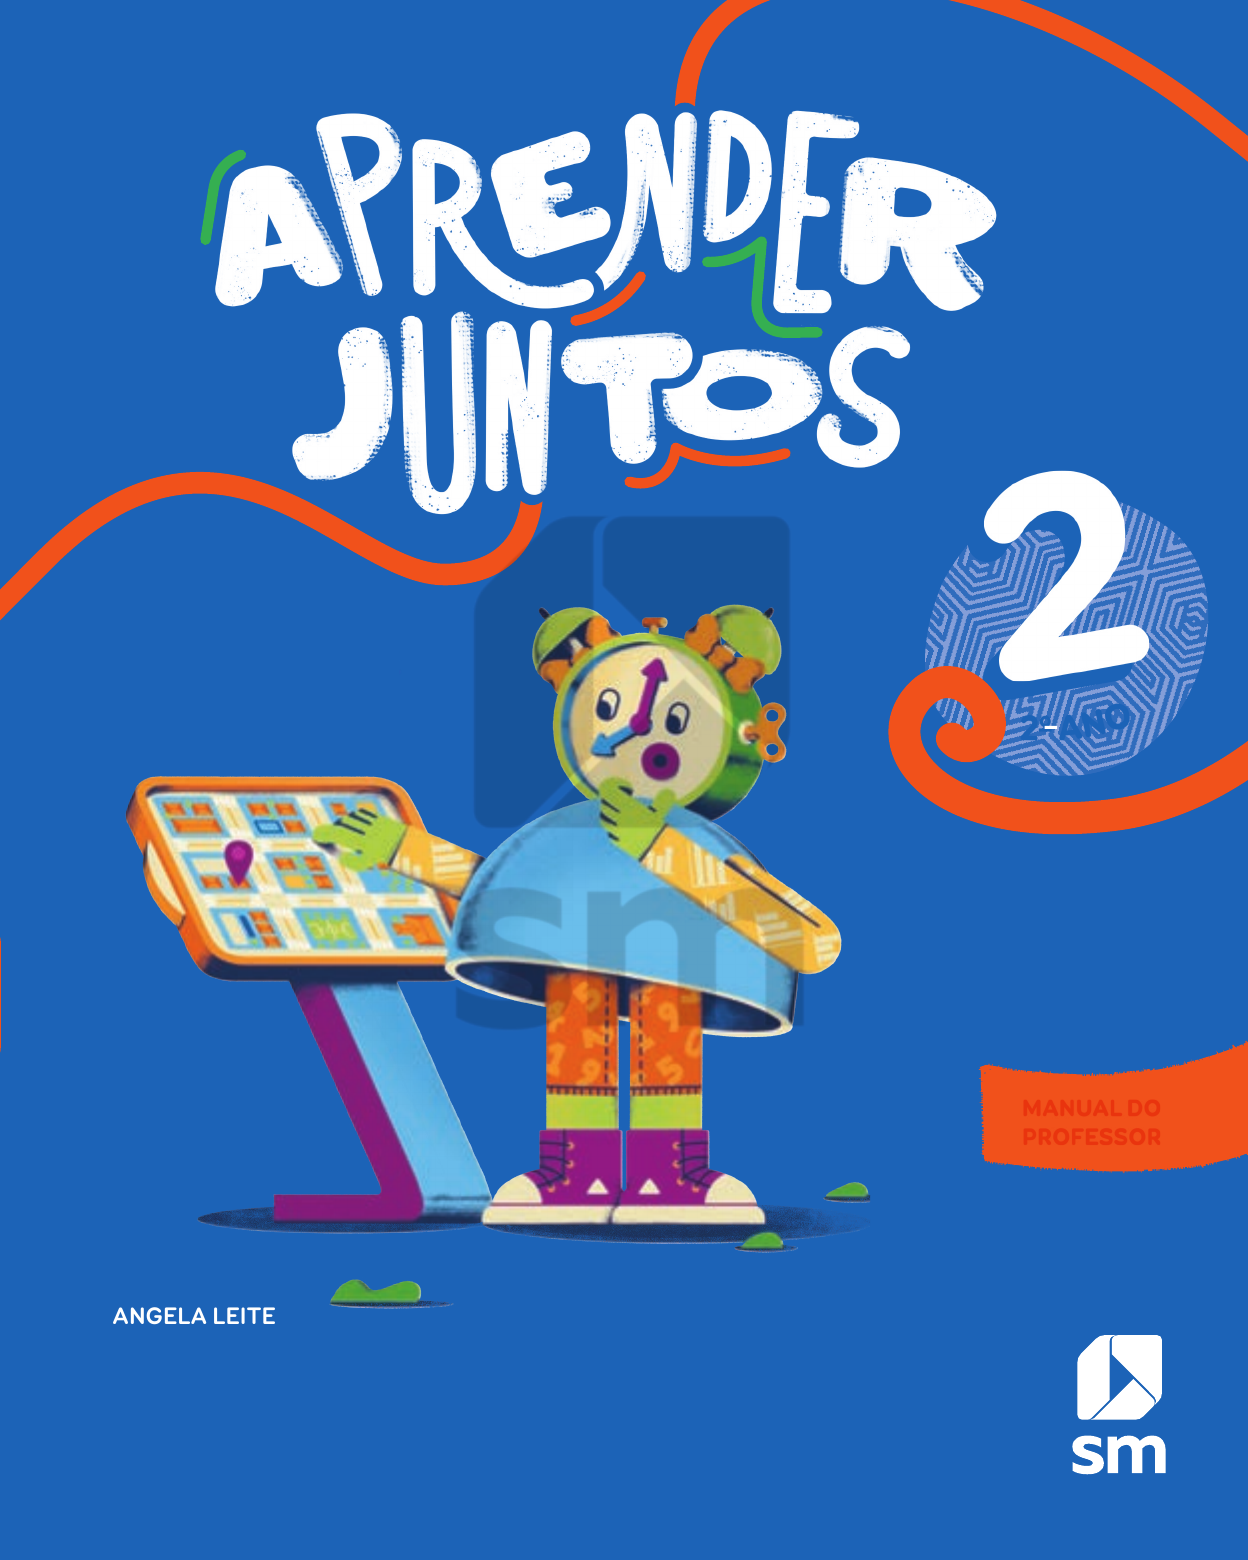 Coleção 10 V - Livro 7 - Matemática - Aluno by Editora Elabore - Issuu